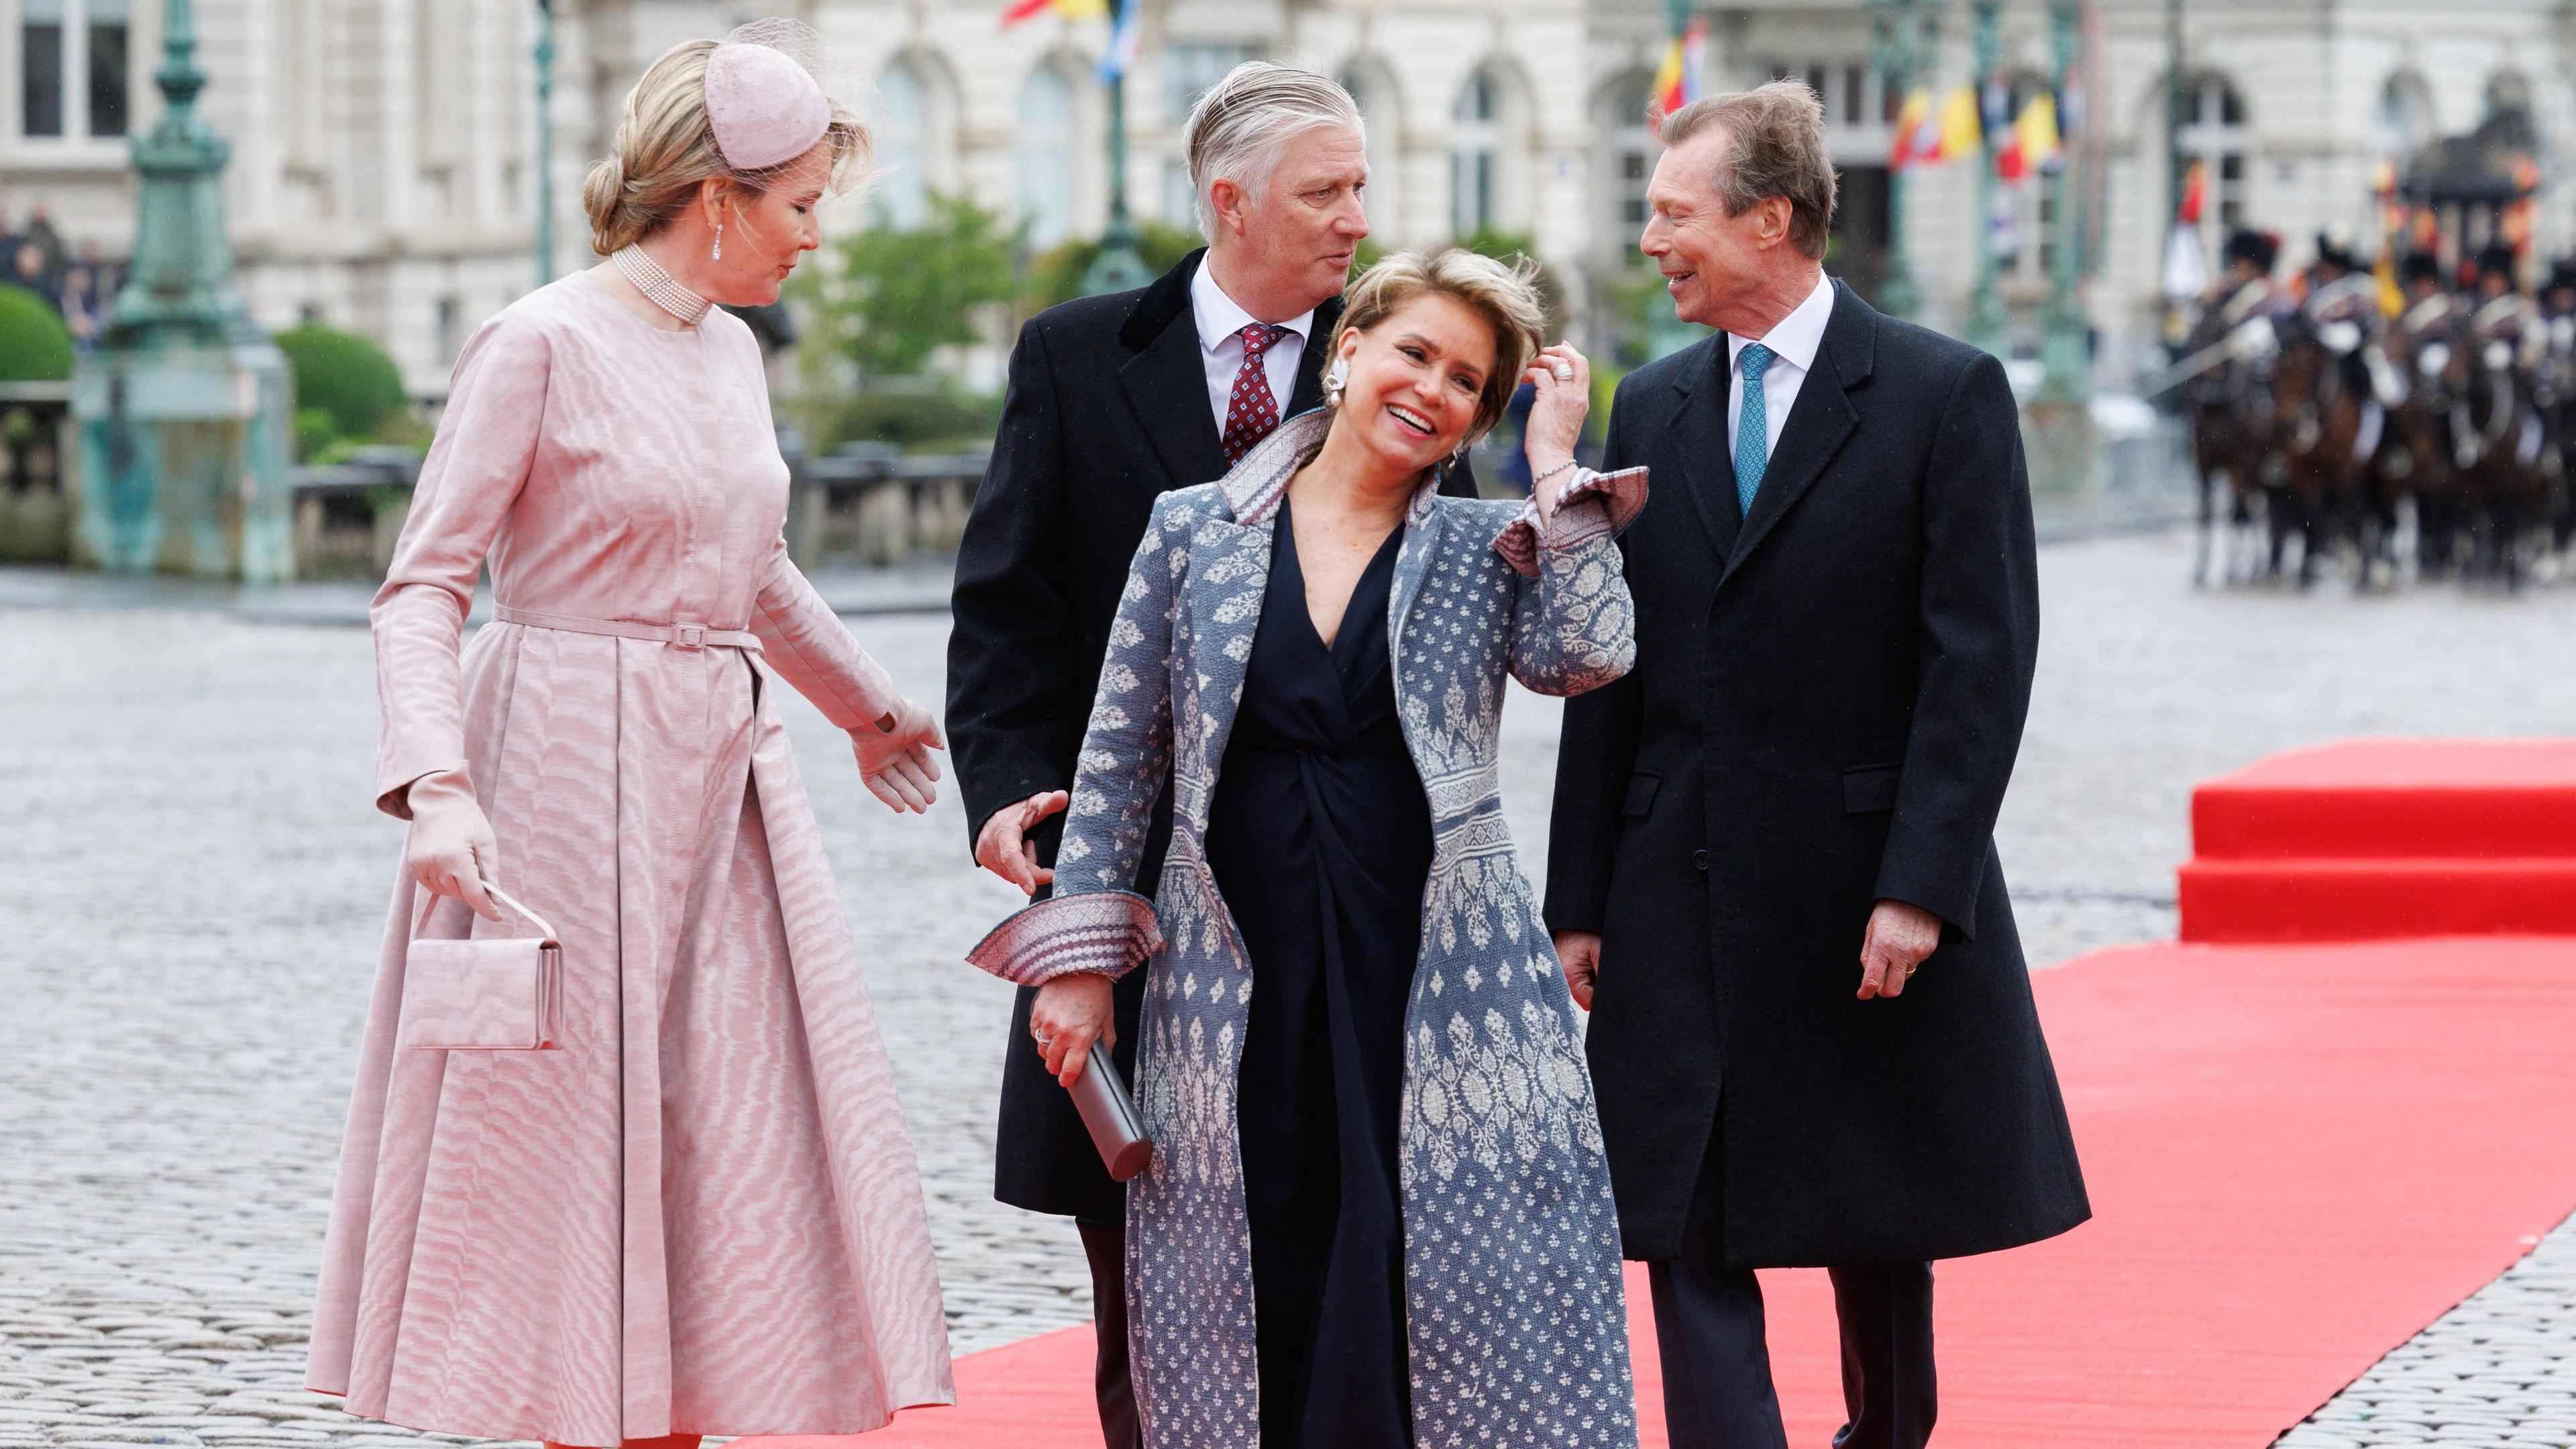 La reine Mathilde, le roi Philippe, la grande-duchesse Maria Teresa et le grand-duc Henri foulent le tapis rouge devant le palais.